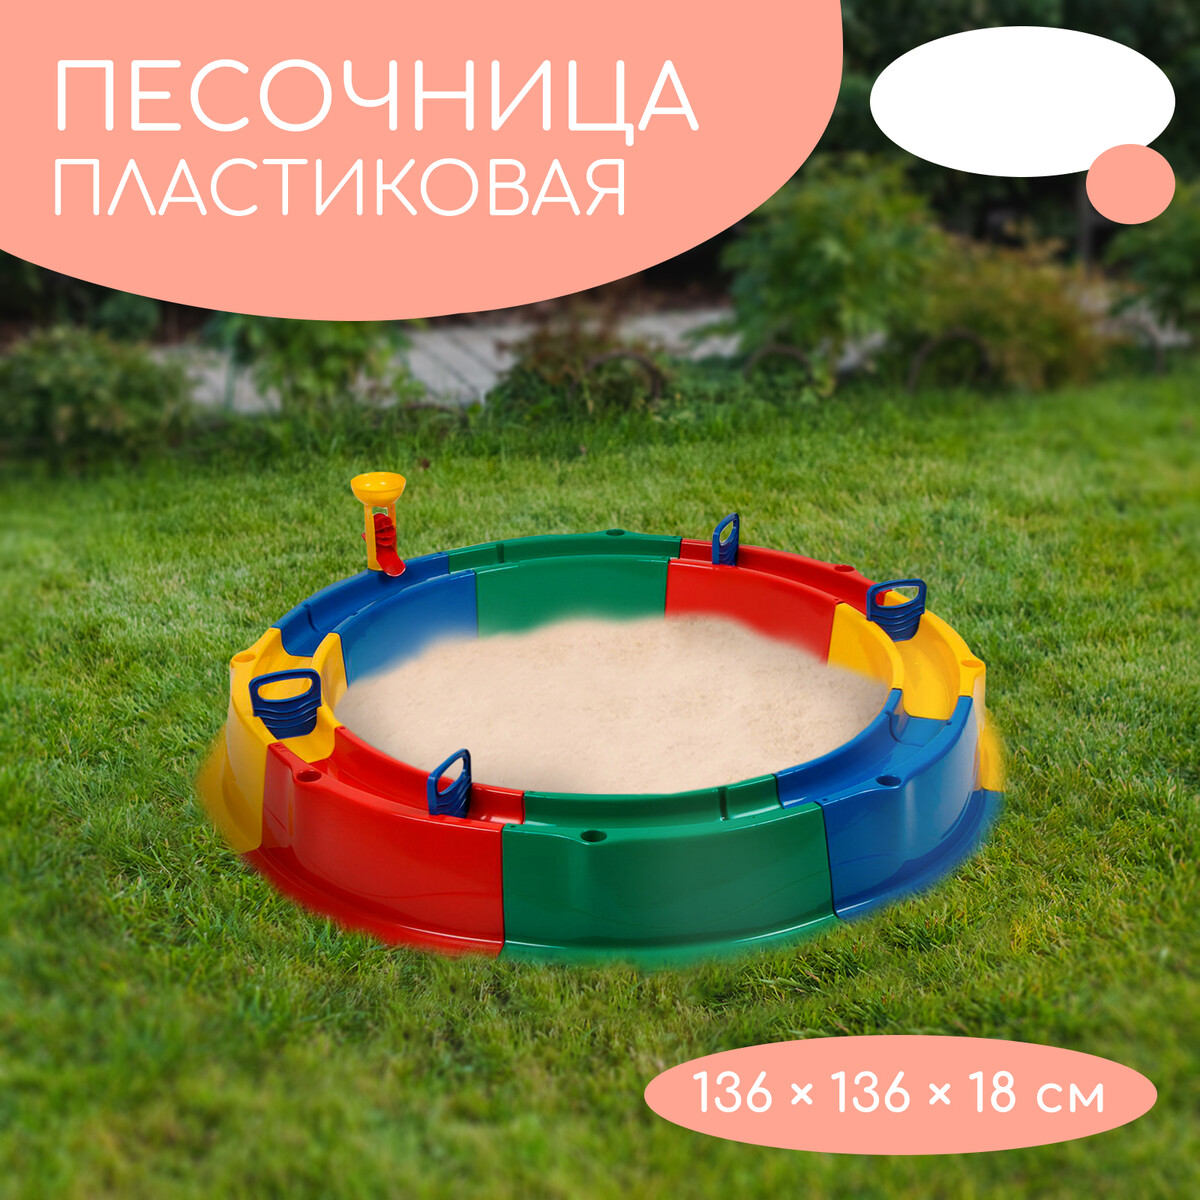 Песочница детская пластиковая, 136 × 136 × 18 см, с набором для игр, battat b summer тележка с игровым набором для песка синий